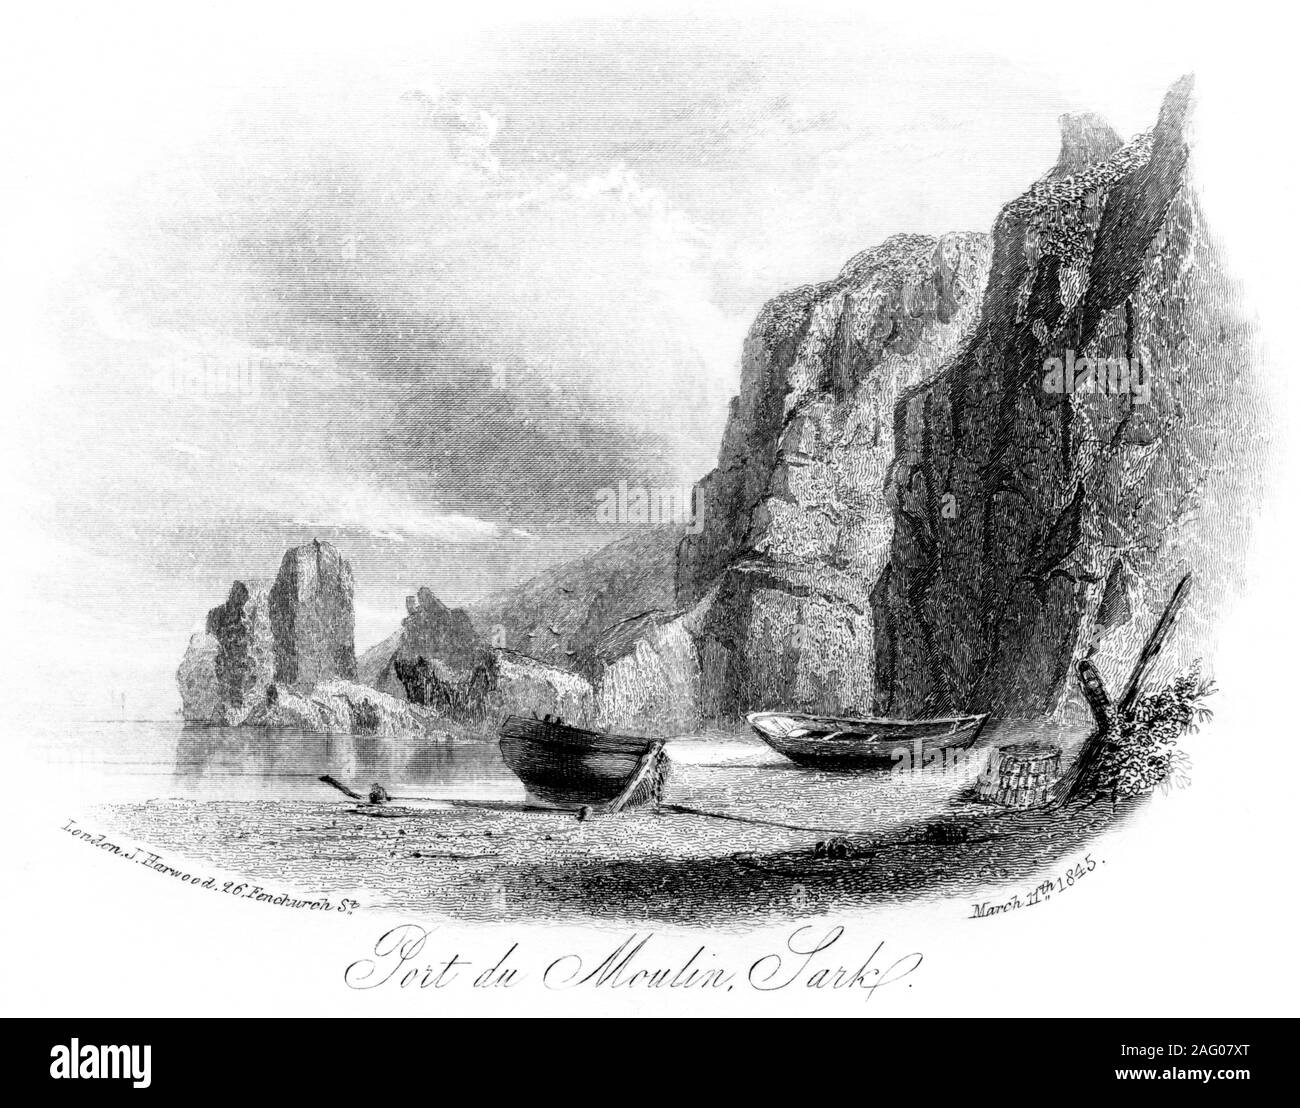 Ein Kupferstich von Port du Moulin, Sark vom 11. März 1845 gescannt und in hoher Auflösung. Glaubten copyright frei. Stockfoto